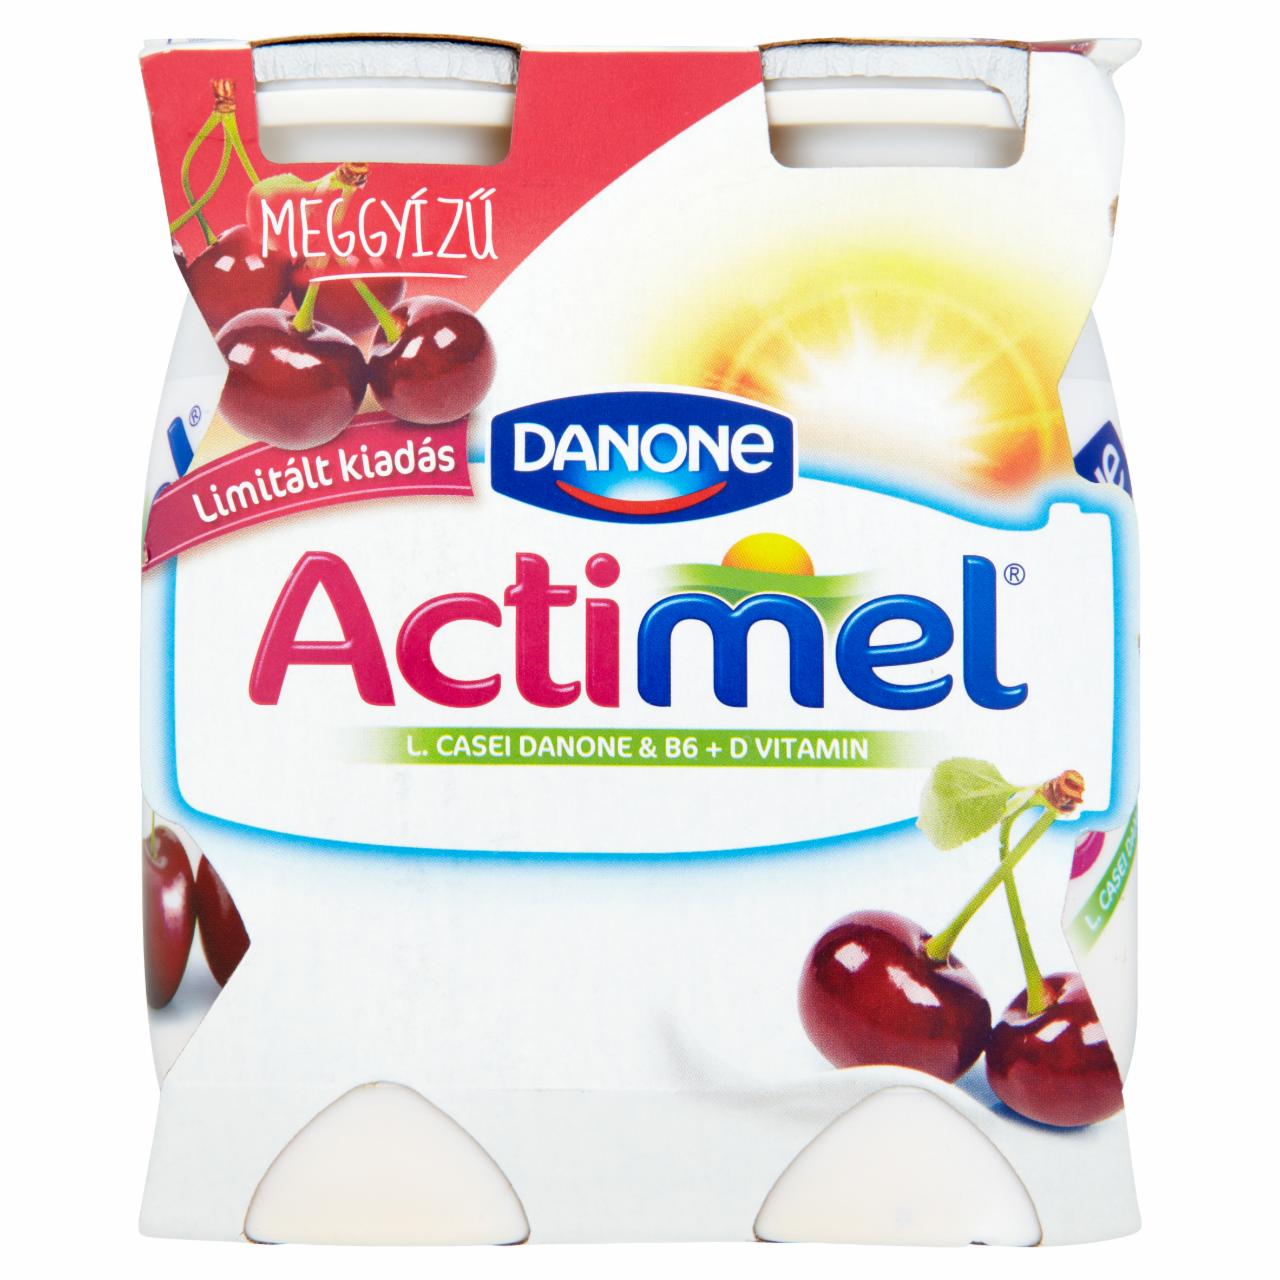 Képek - Danone Actimel zsírszegény, élőflórás, meggyízű joghurtital 4 x 100 g